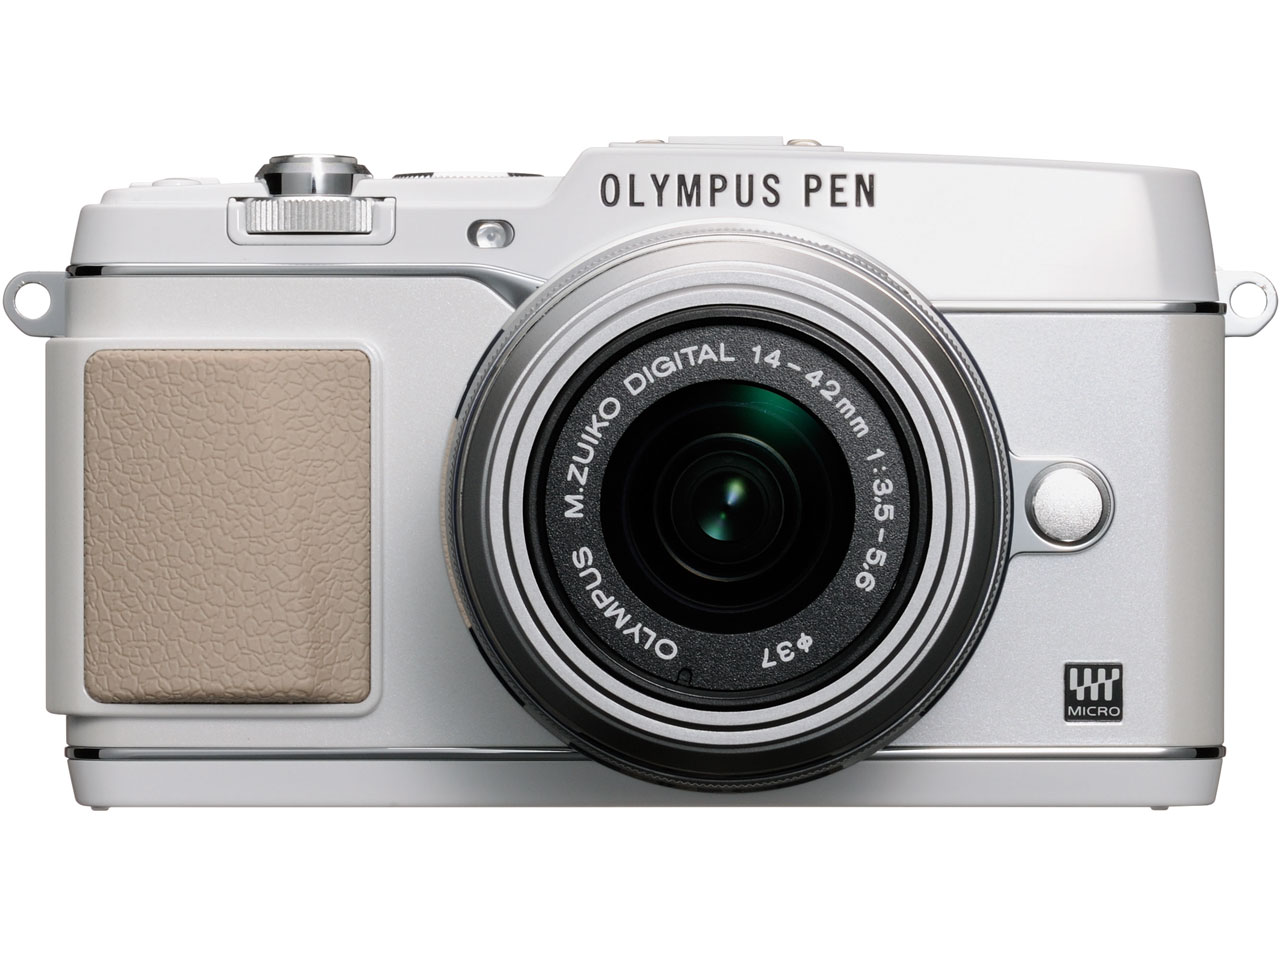 価格.com - 『本体 正面1』 OLYMPUS PEN E-P5 14-42mm レンズキット [ホワイト] の製品画像